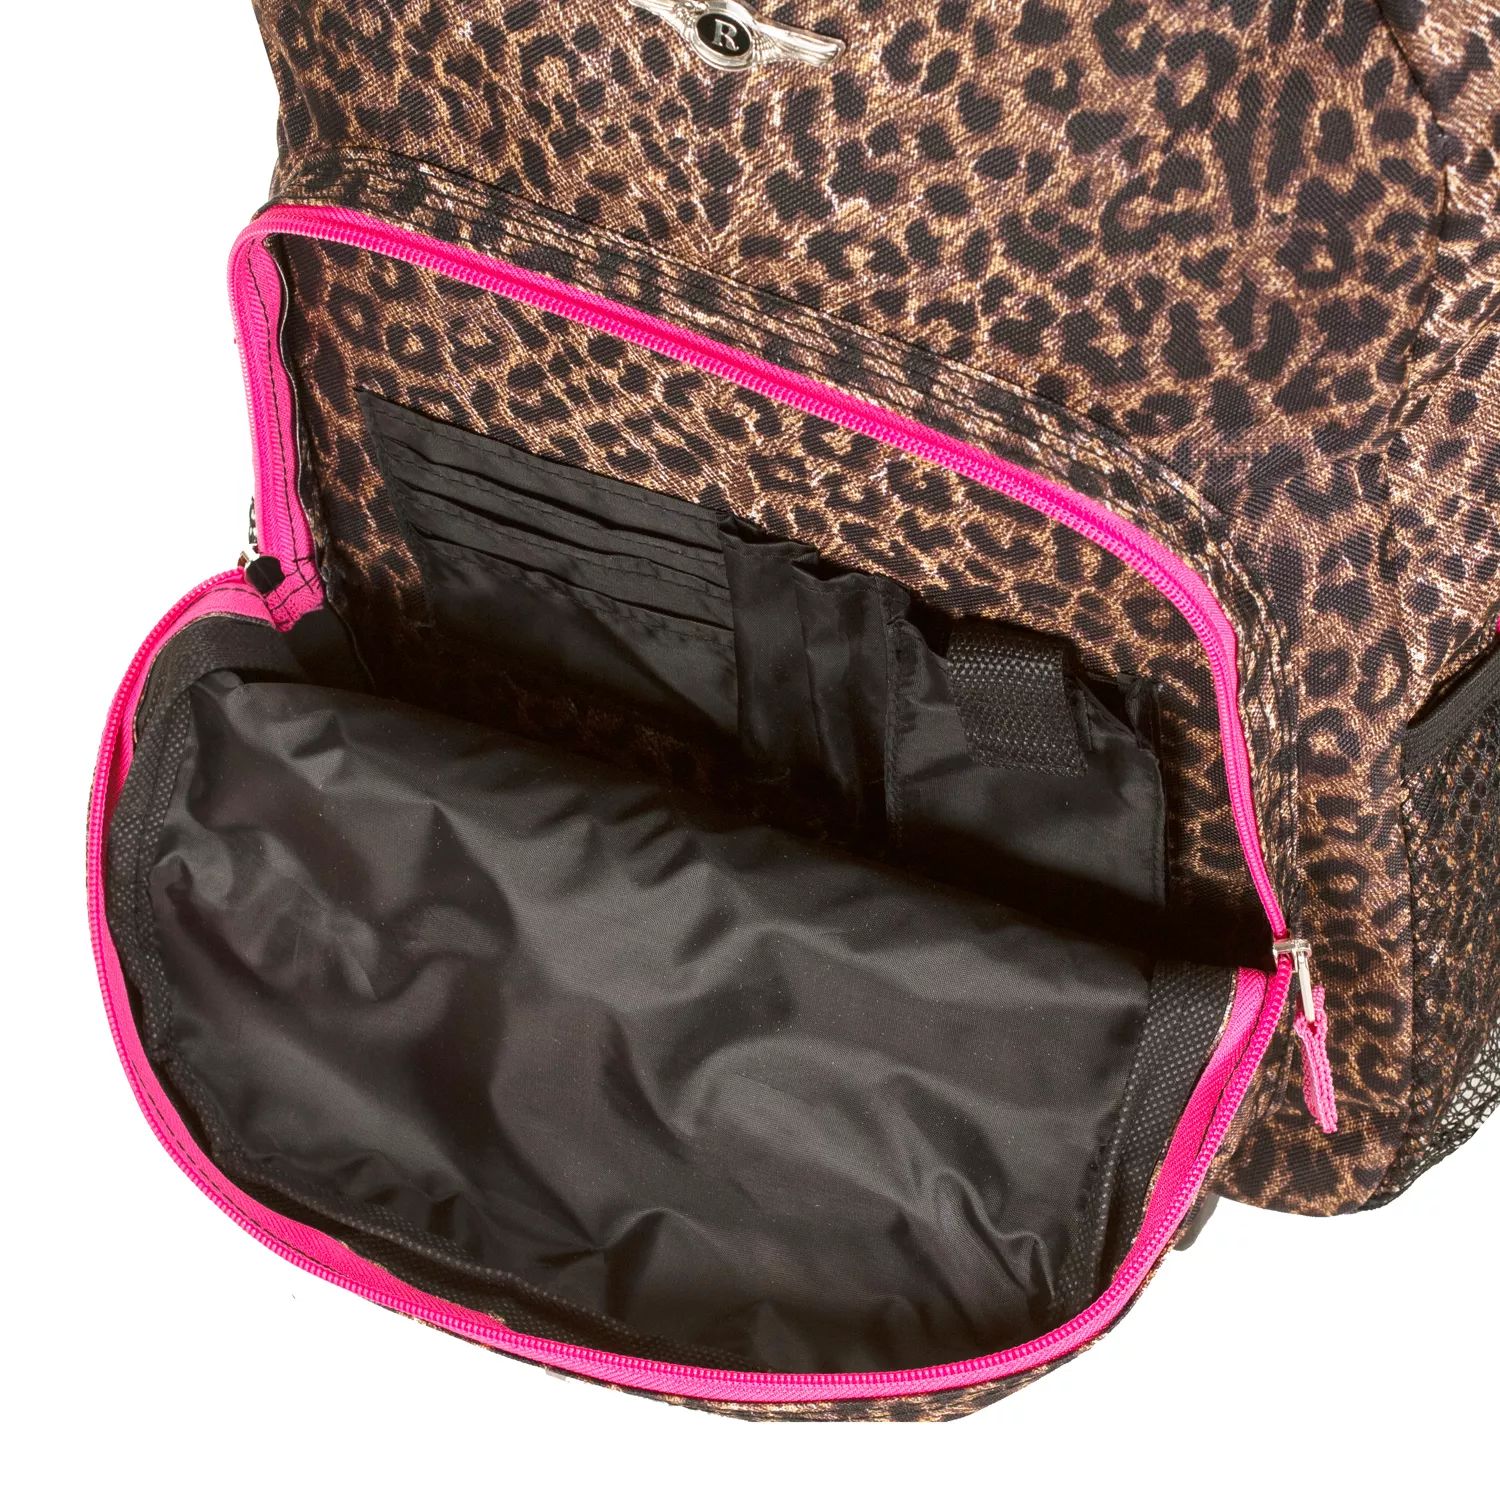 Рюкзак Rockland на колесиках 17 дюймов индокитайский хит продаж безопасный уютный рюкзак 17 дюймов наплечный рюкзак винтажные пикники высшего качества